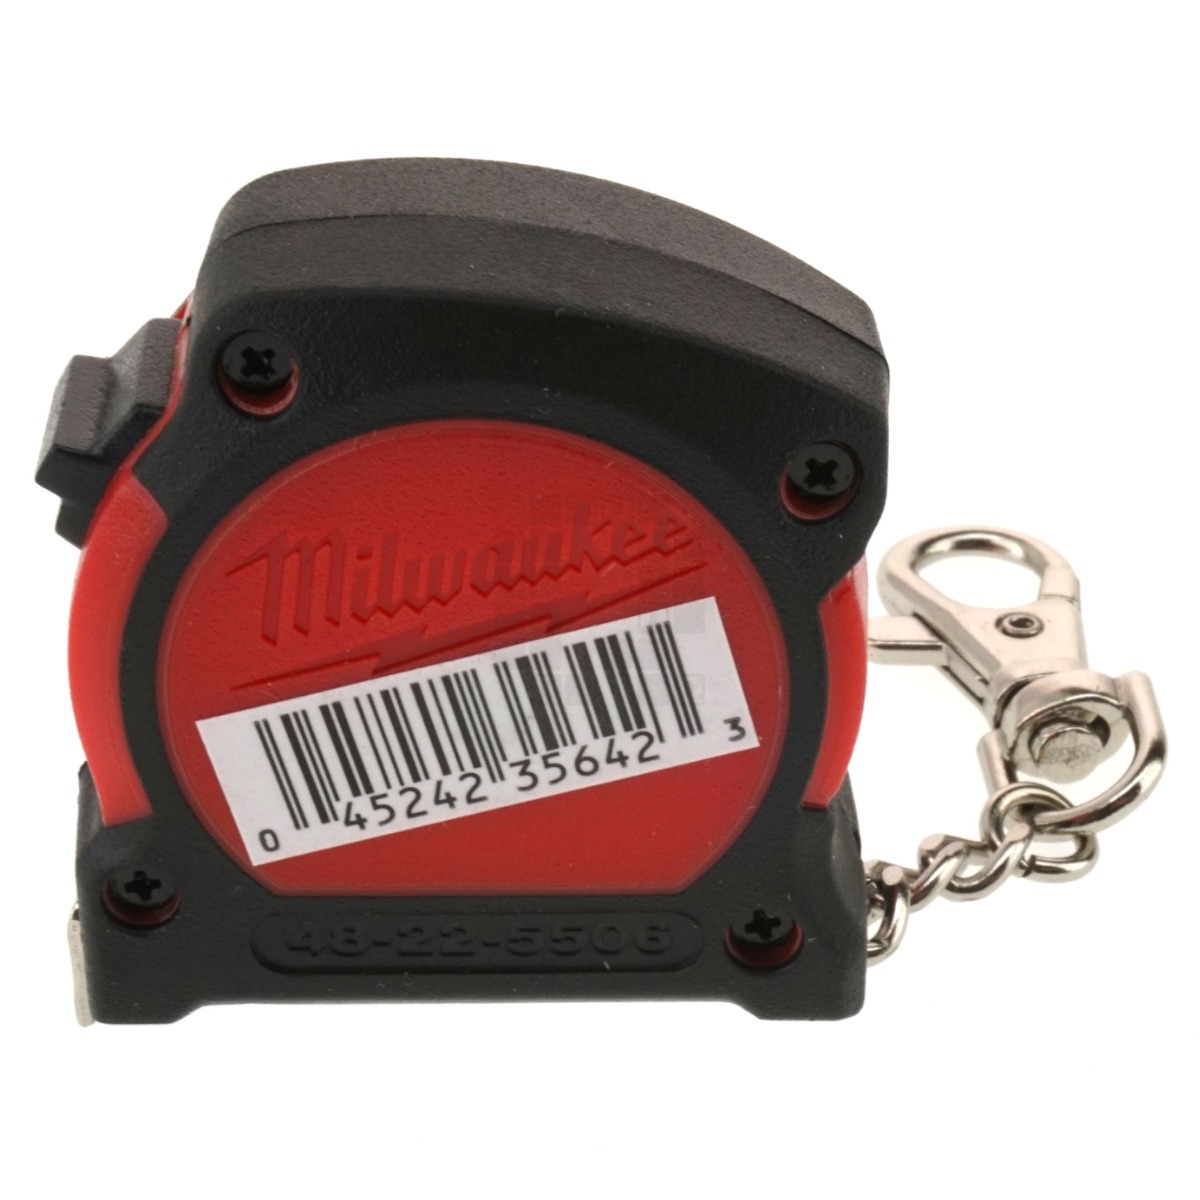 6ft/2M Milwaukee key chain Tape Measure 48-22-5506 / C (MIL-5506)